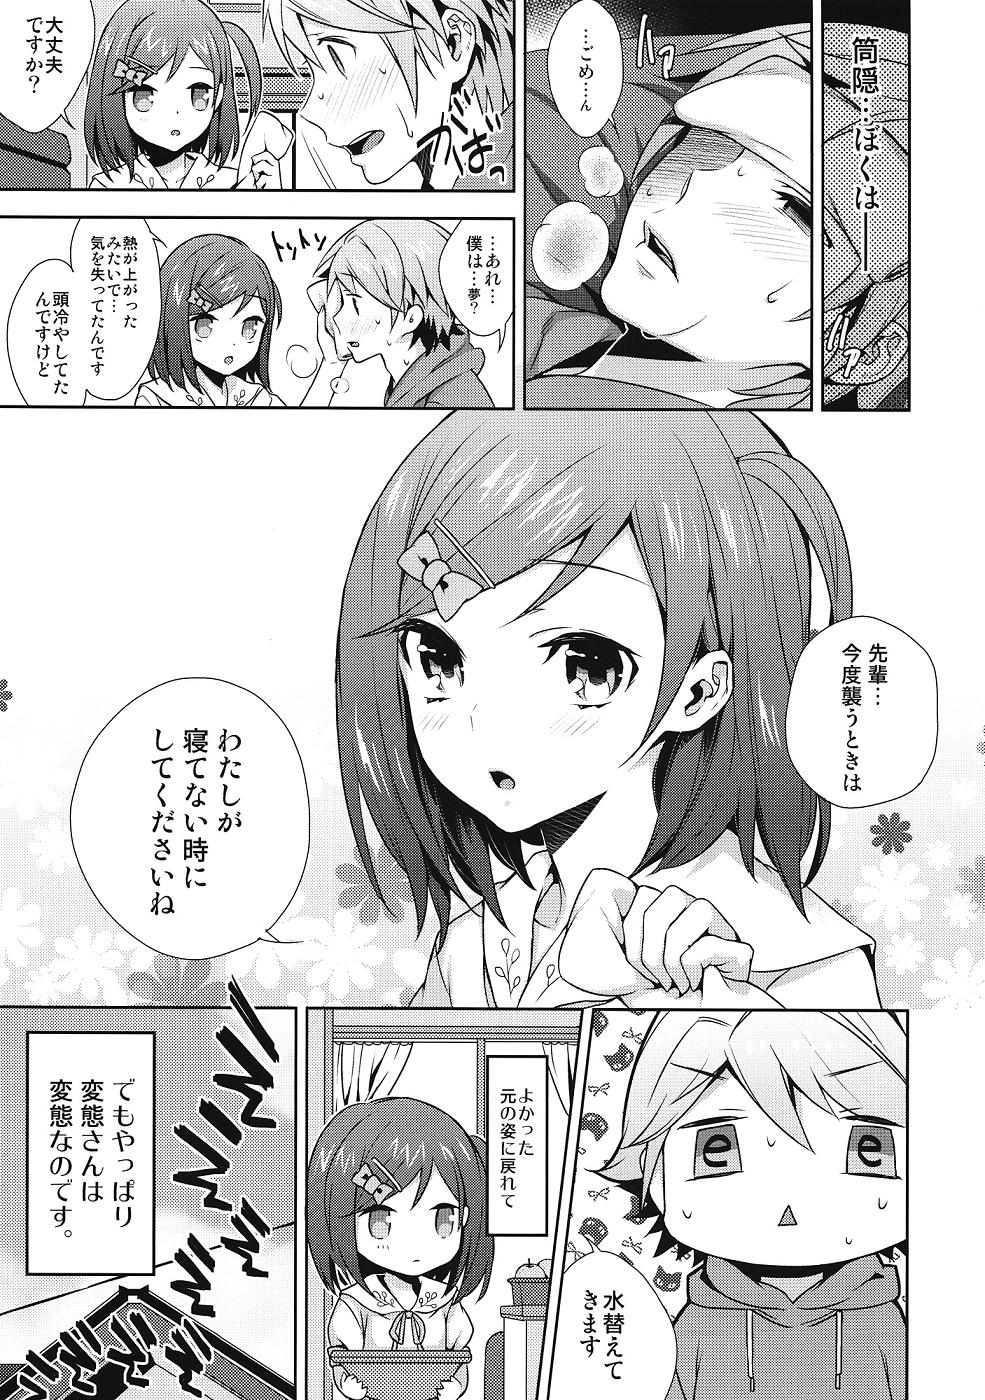 Pounded Hentai Ouji ni Okasareta Neko. - Hentai ouji to warawanai neko Lover - Page 22